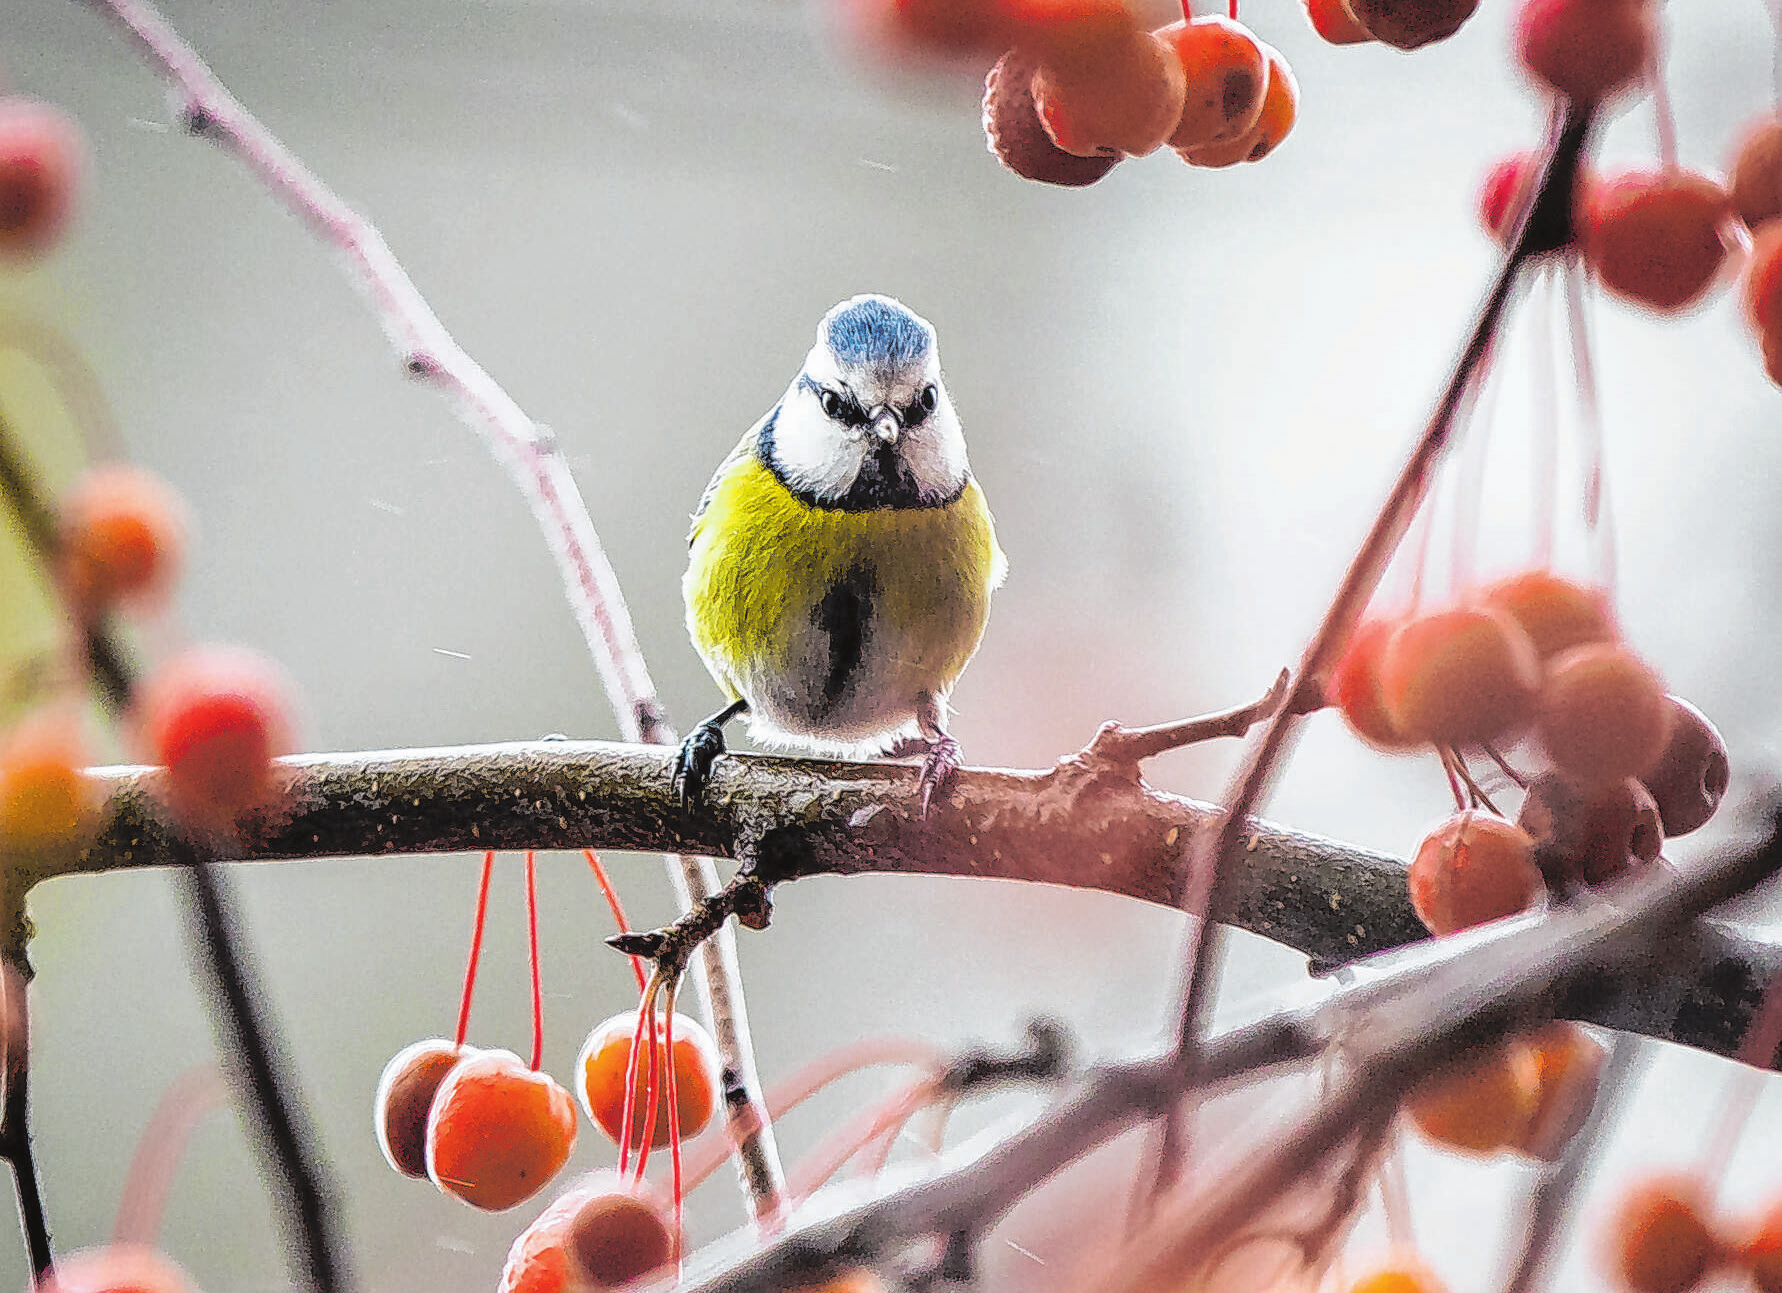 Gehölze mit Früchten wie der Zierapfel bieten Vögeln in den kalten Monaten Schutz und Nahrung. Foto: Rumpenhorst/dpa-mag